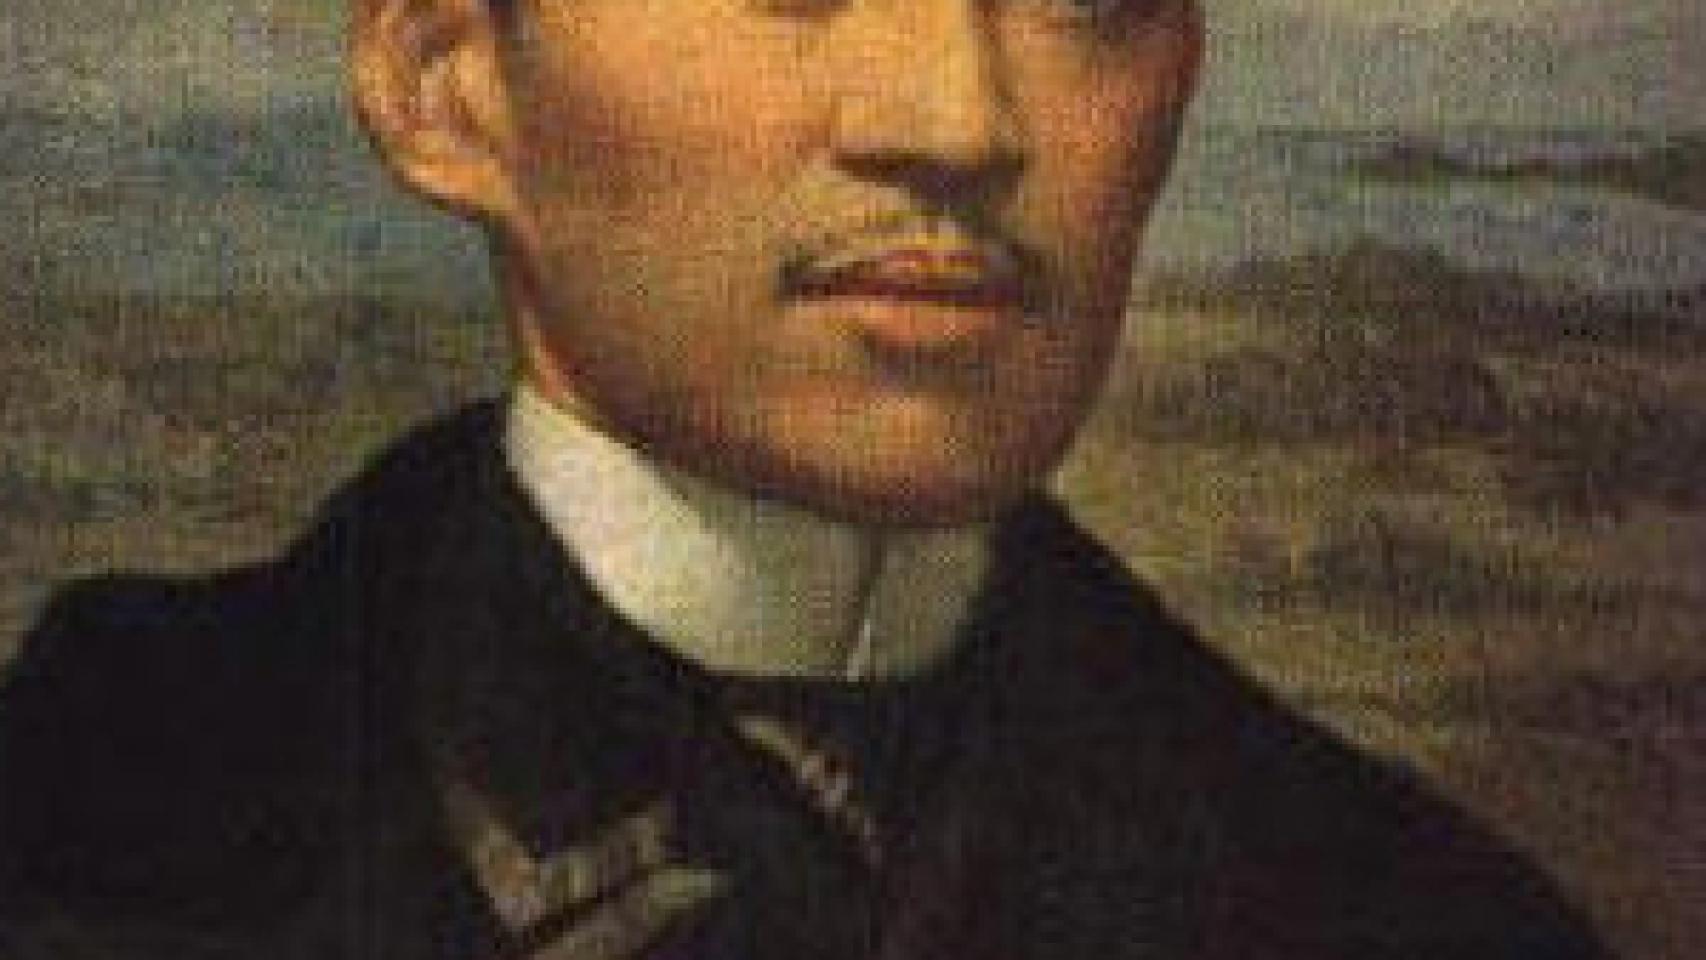 Image: José Rizal, literatura filipina escrita en español